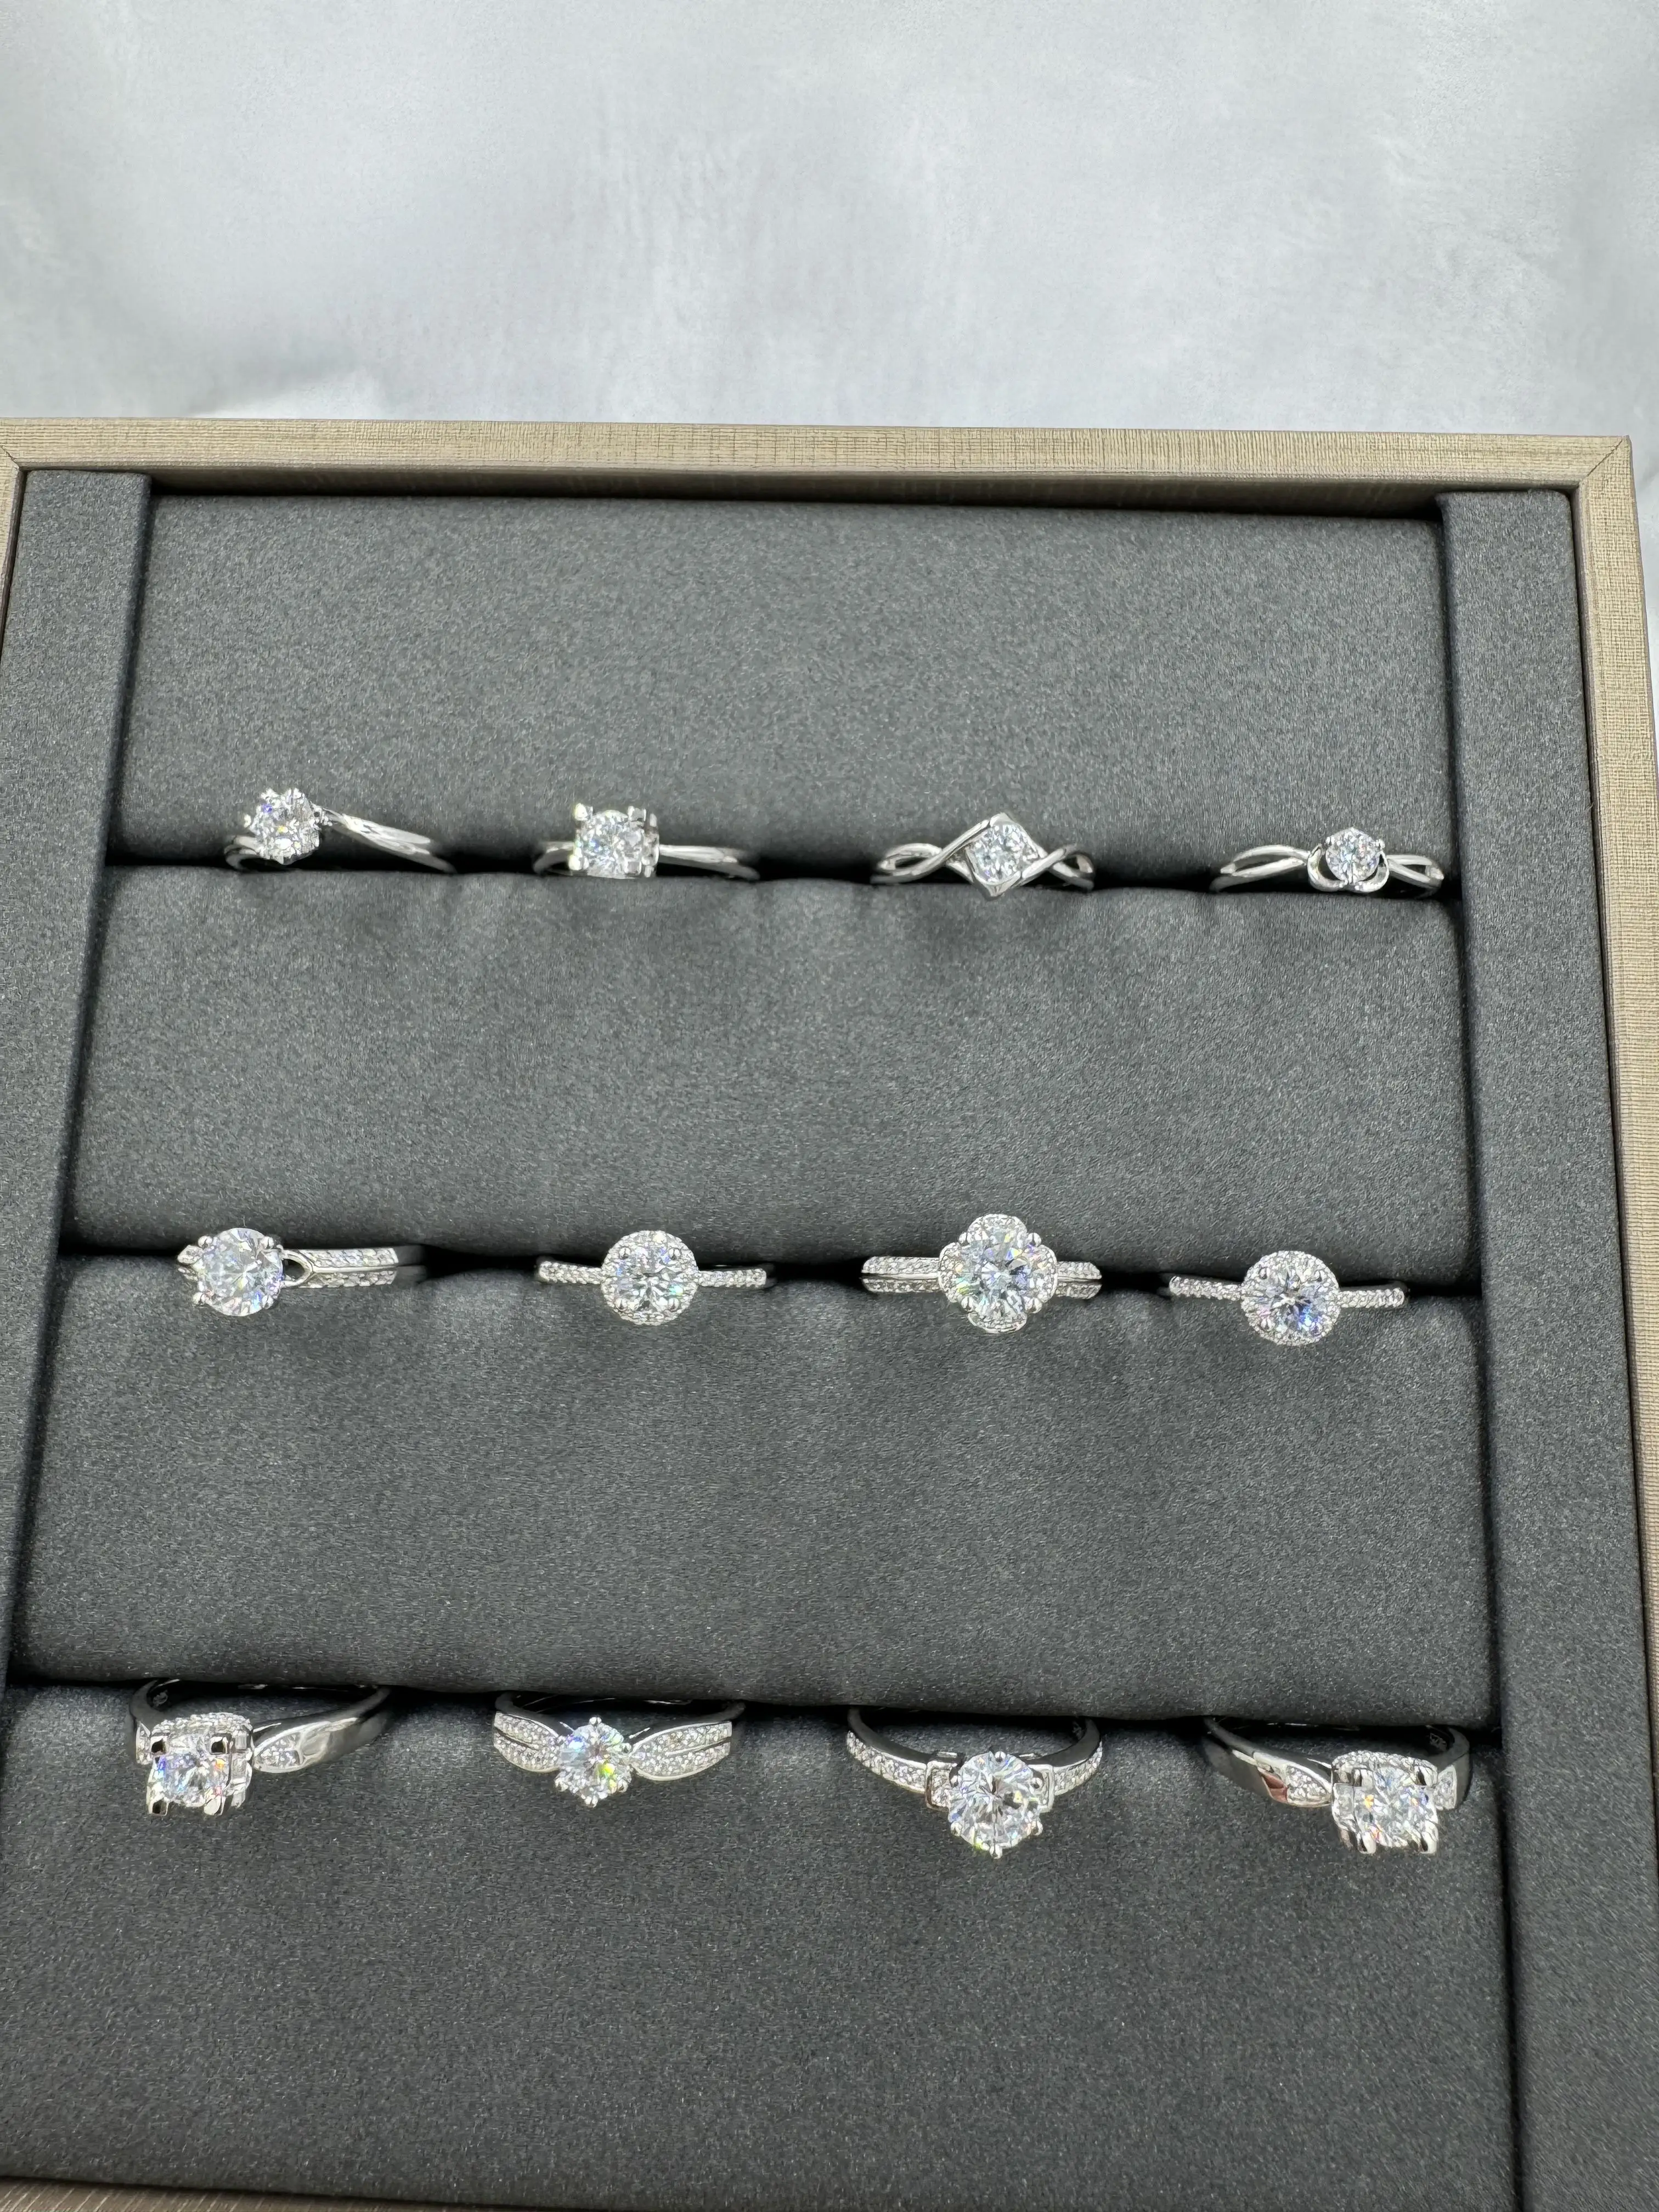 कस्टम बढ़िया आभूषण पार्टी 925 स्टर्लिंग सिल्वर महिलाओं की लक्जरी अंगूठी जिरकोन मोसेंट डायमंड अंगूठी शादी की अंगूठी एकाधिक फैशन